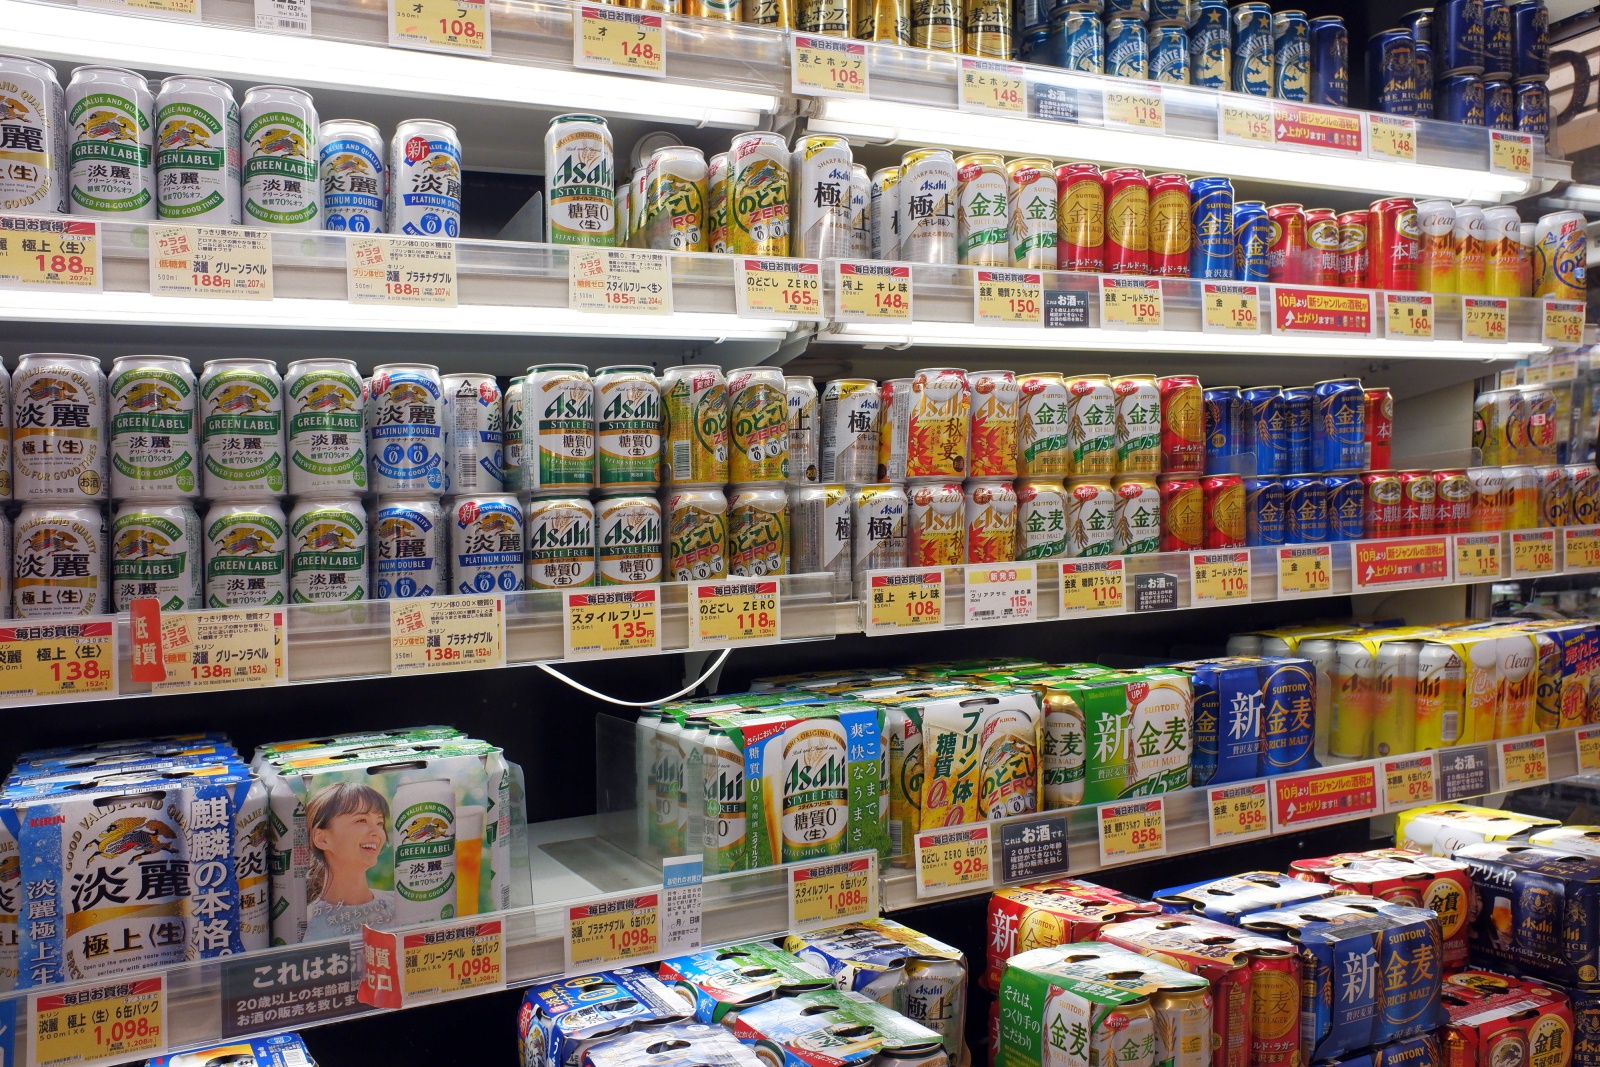 発泡酒 第3のビール増税で缶チューハイの一人勝ち 消費者やメーカーへの影響とは ビジネス It